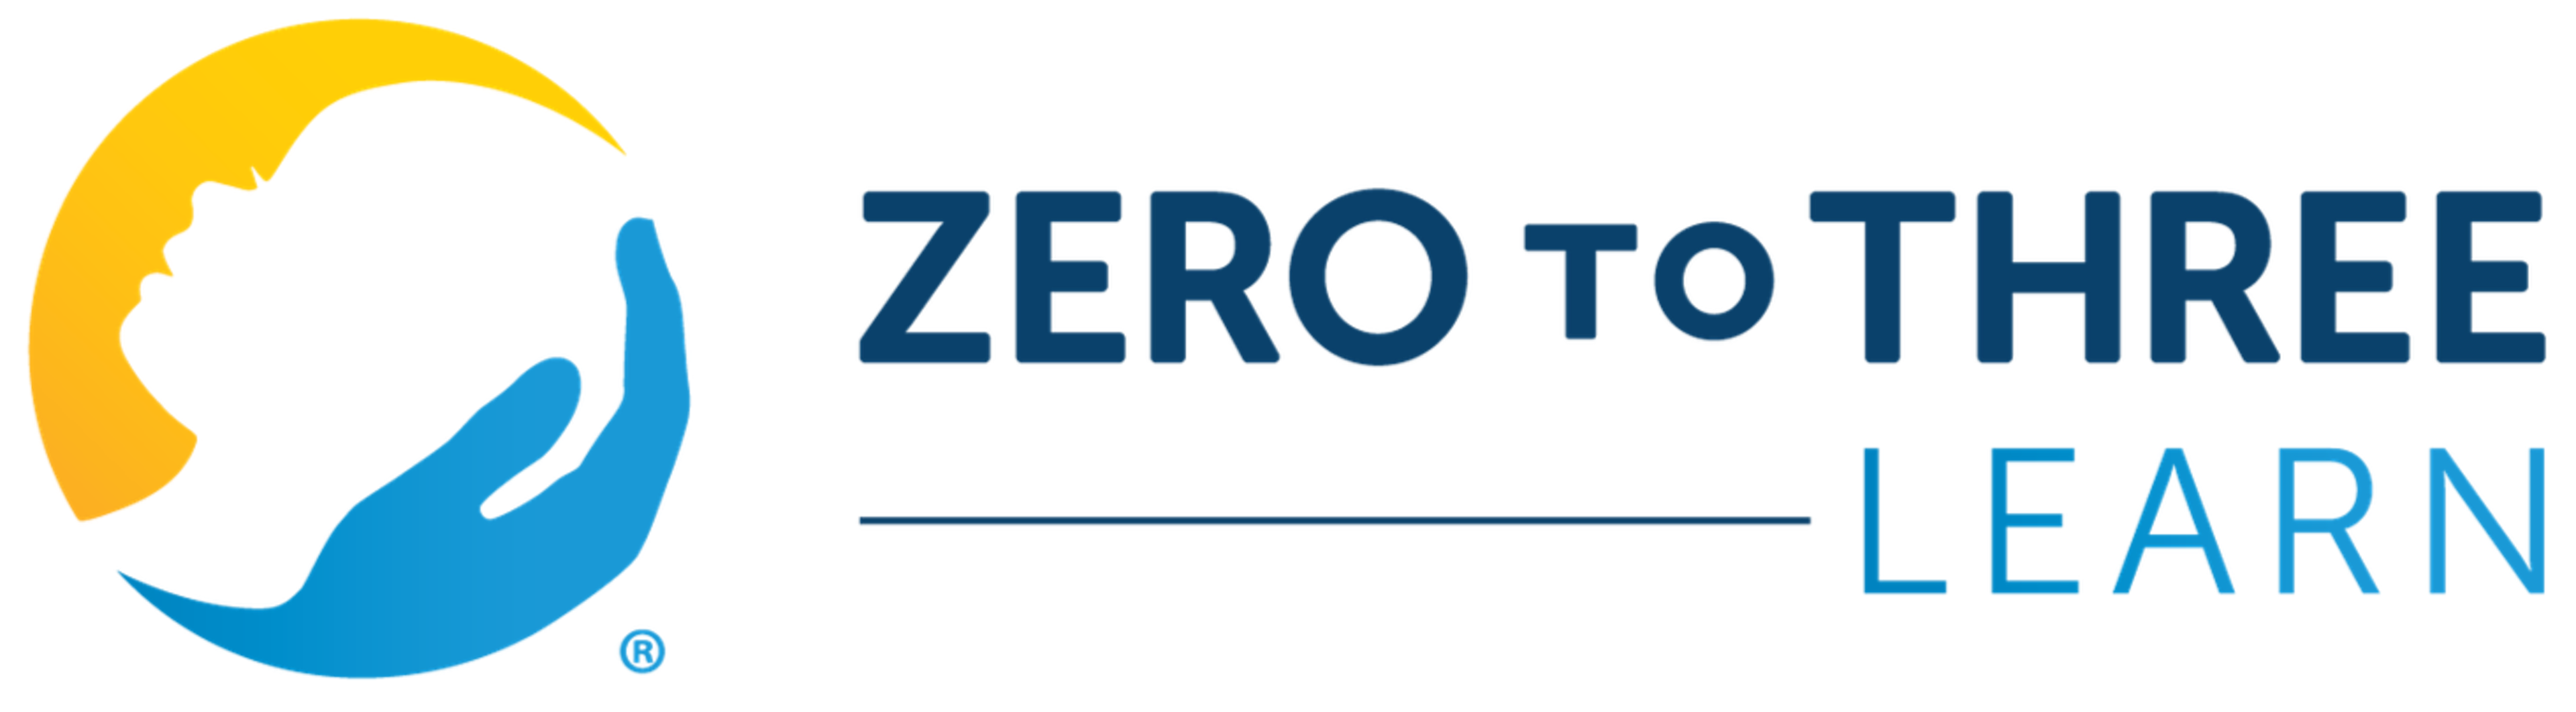 Zero to Three Learn logo